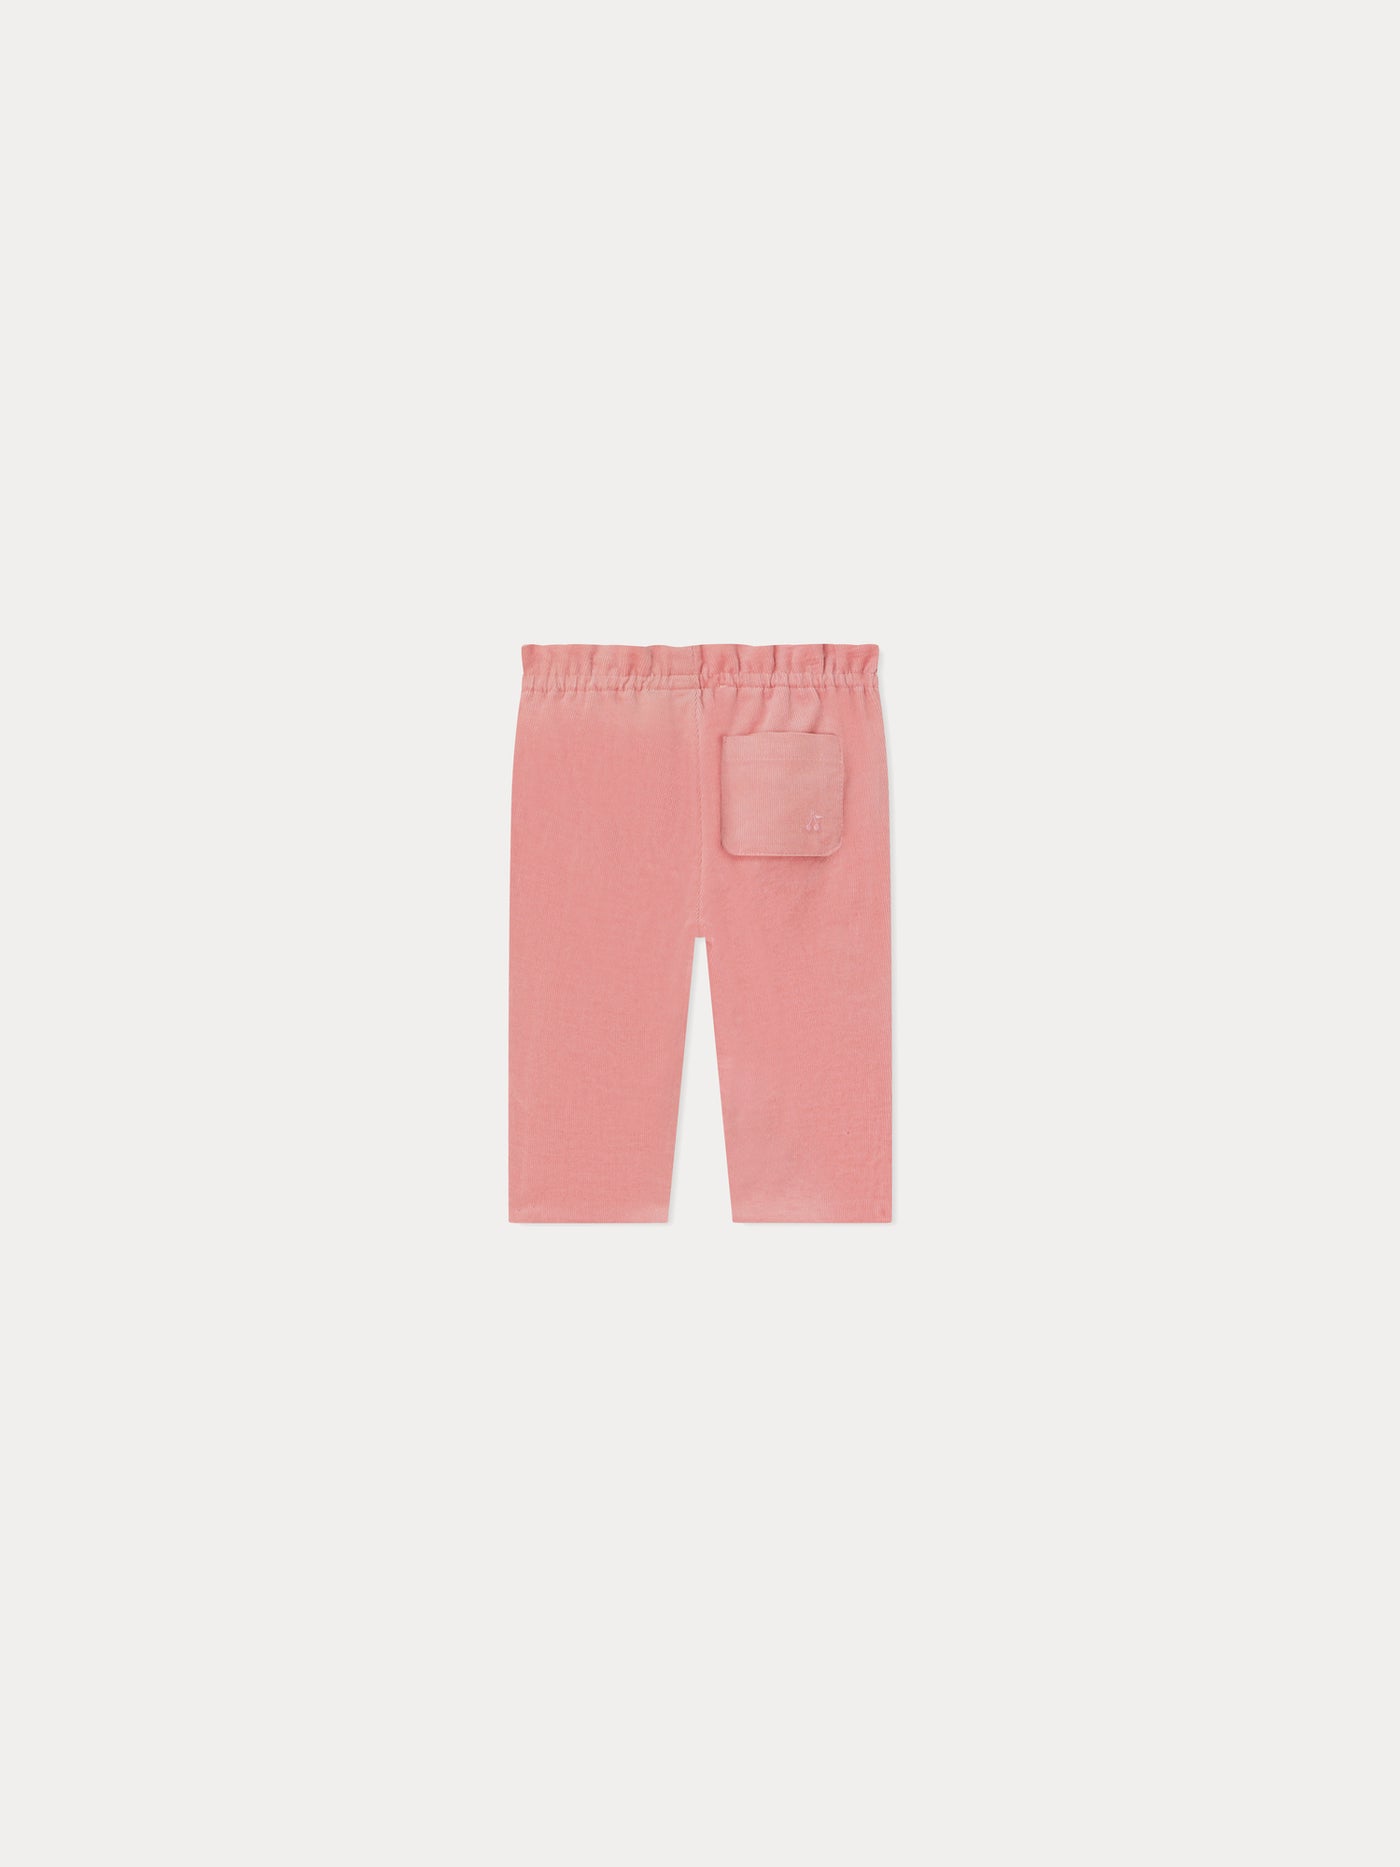 Tweety Pants faded pink